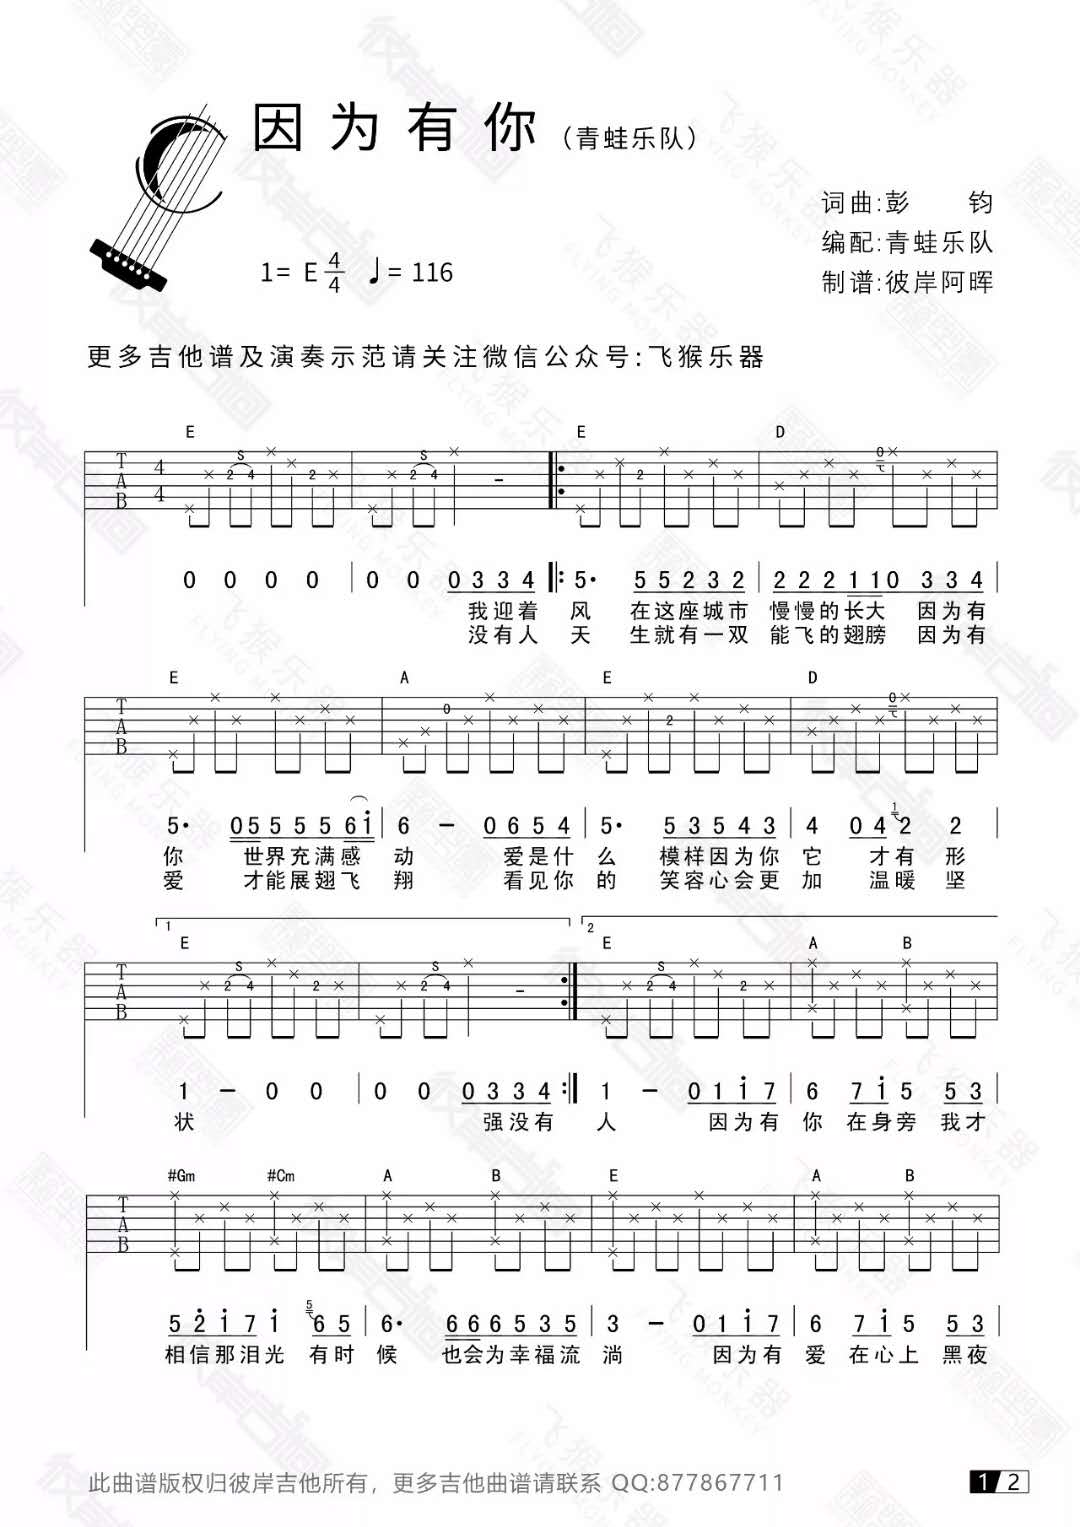 青蛙乐队《因为有你》吉他谱(E调)-Guitar Music Score